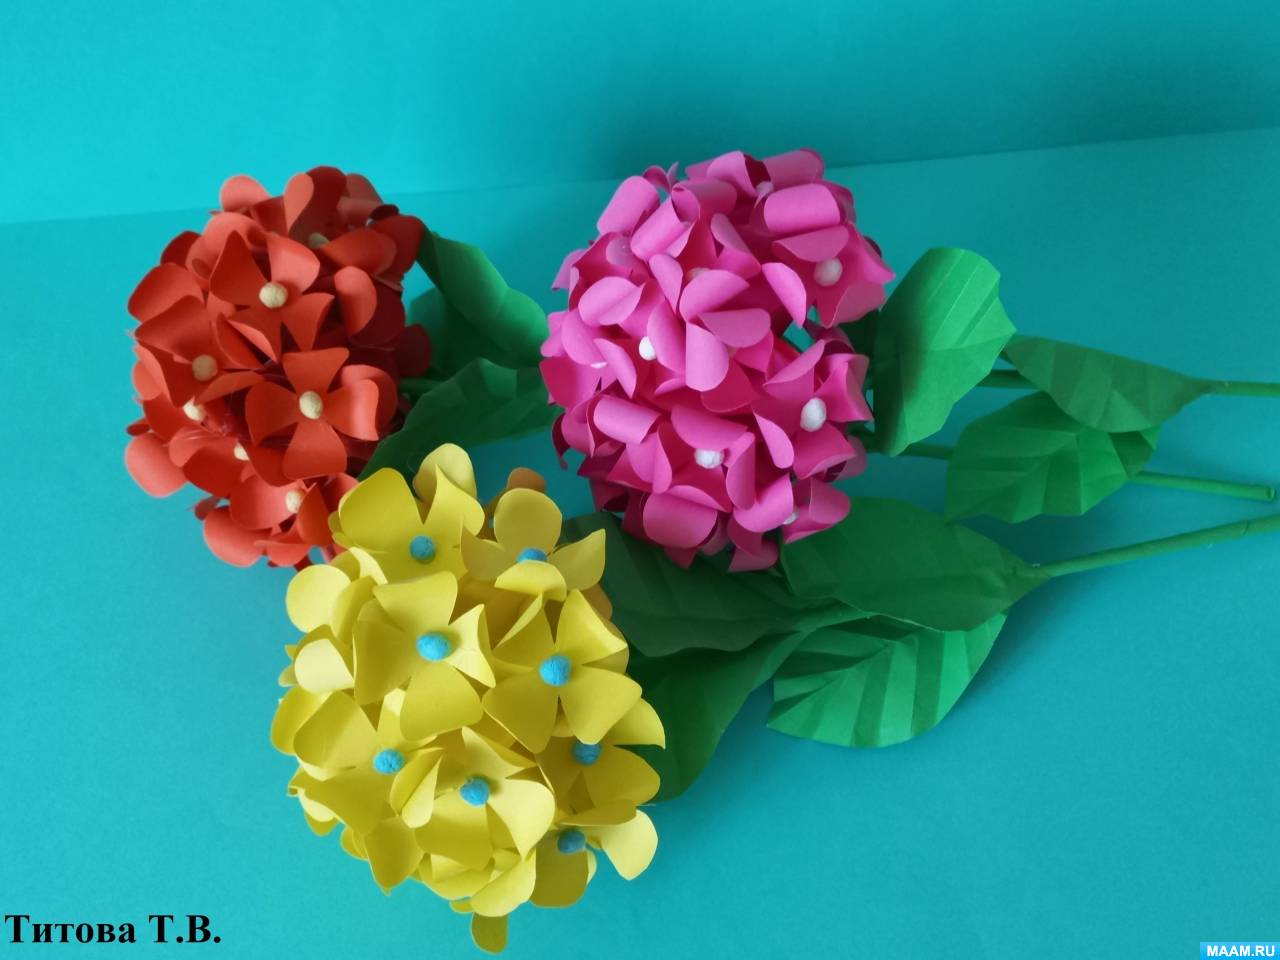 Мастер-класс по изготовлению объемного цветка из офисной бумаги в технике 3D оригами (20 фото). Воспитателям детских садов, школьным учителям ипедагогам - Маам.ру